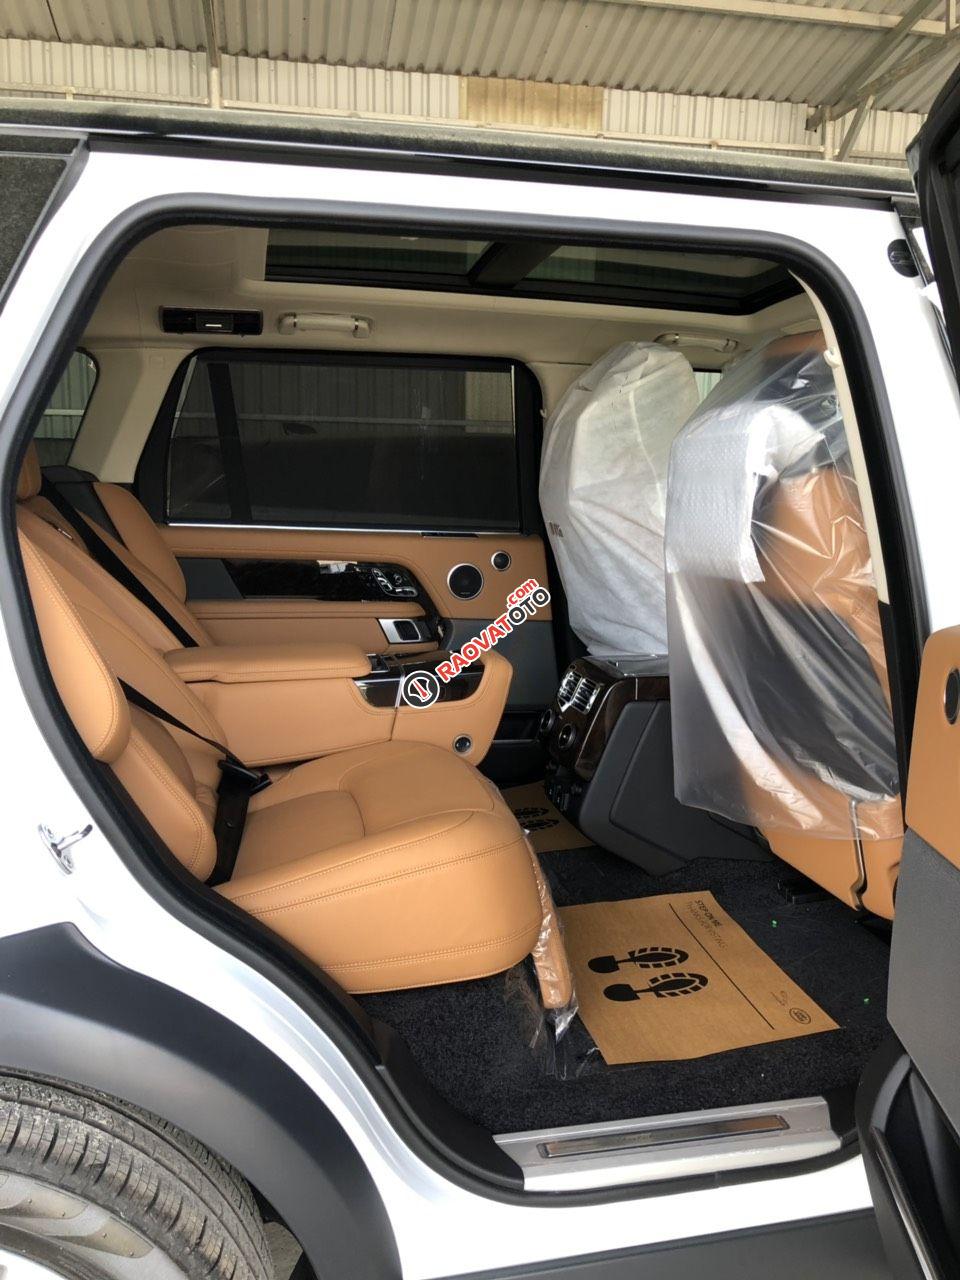 Bán xe LandRover Range Rover Autobiography Long 2019 - 2020 màu trắng, đen, xanh giao ngay 093 22222 53-14